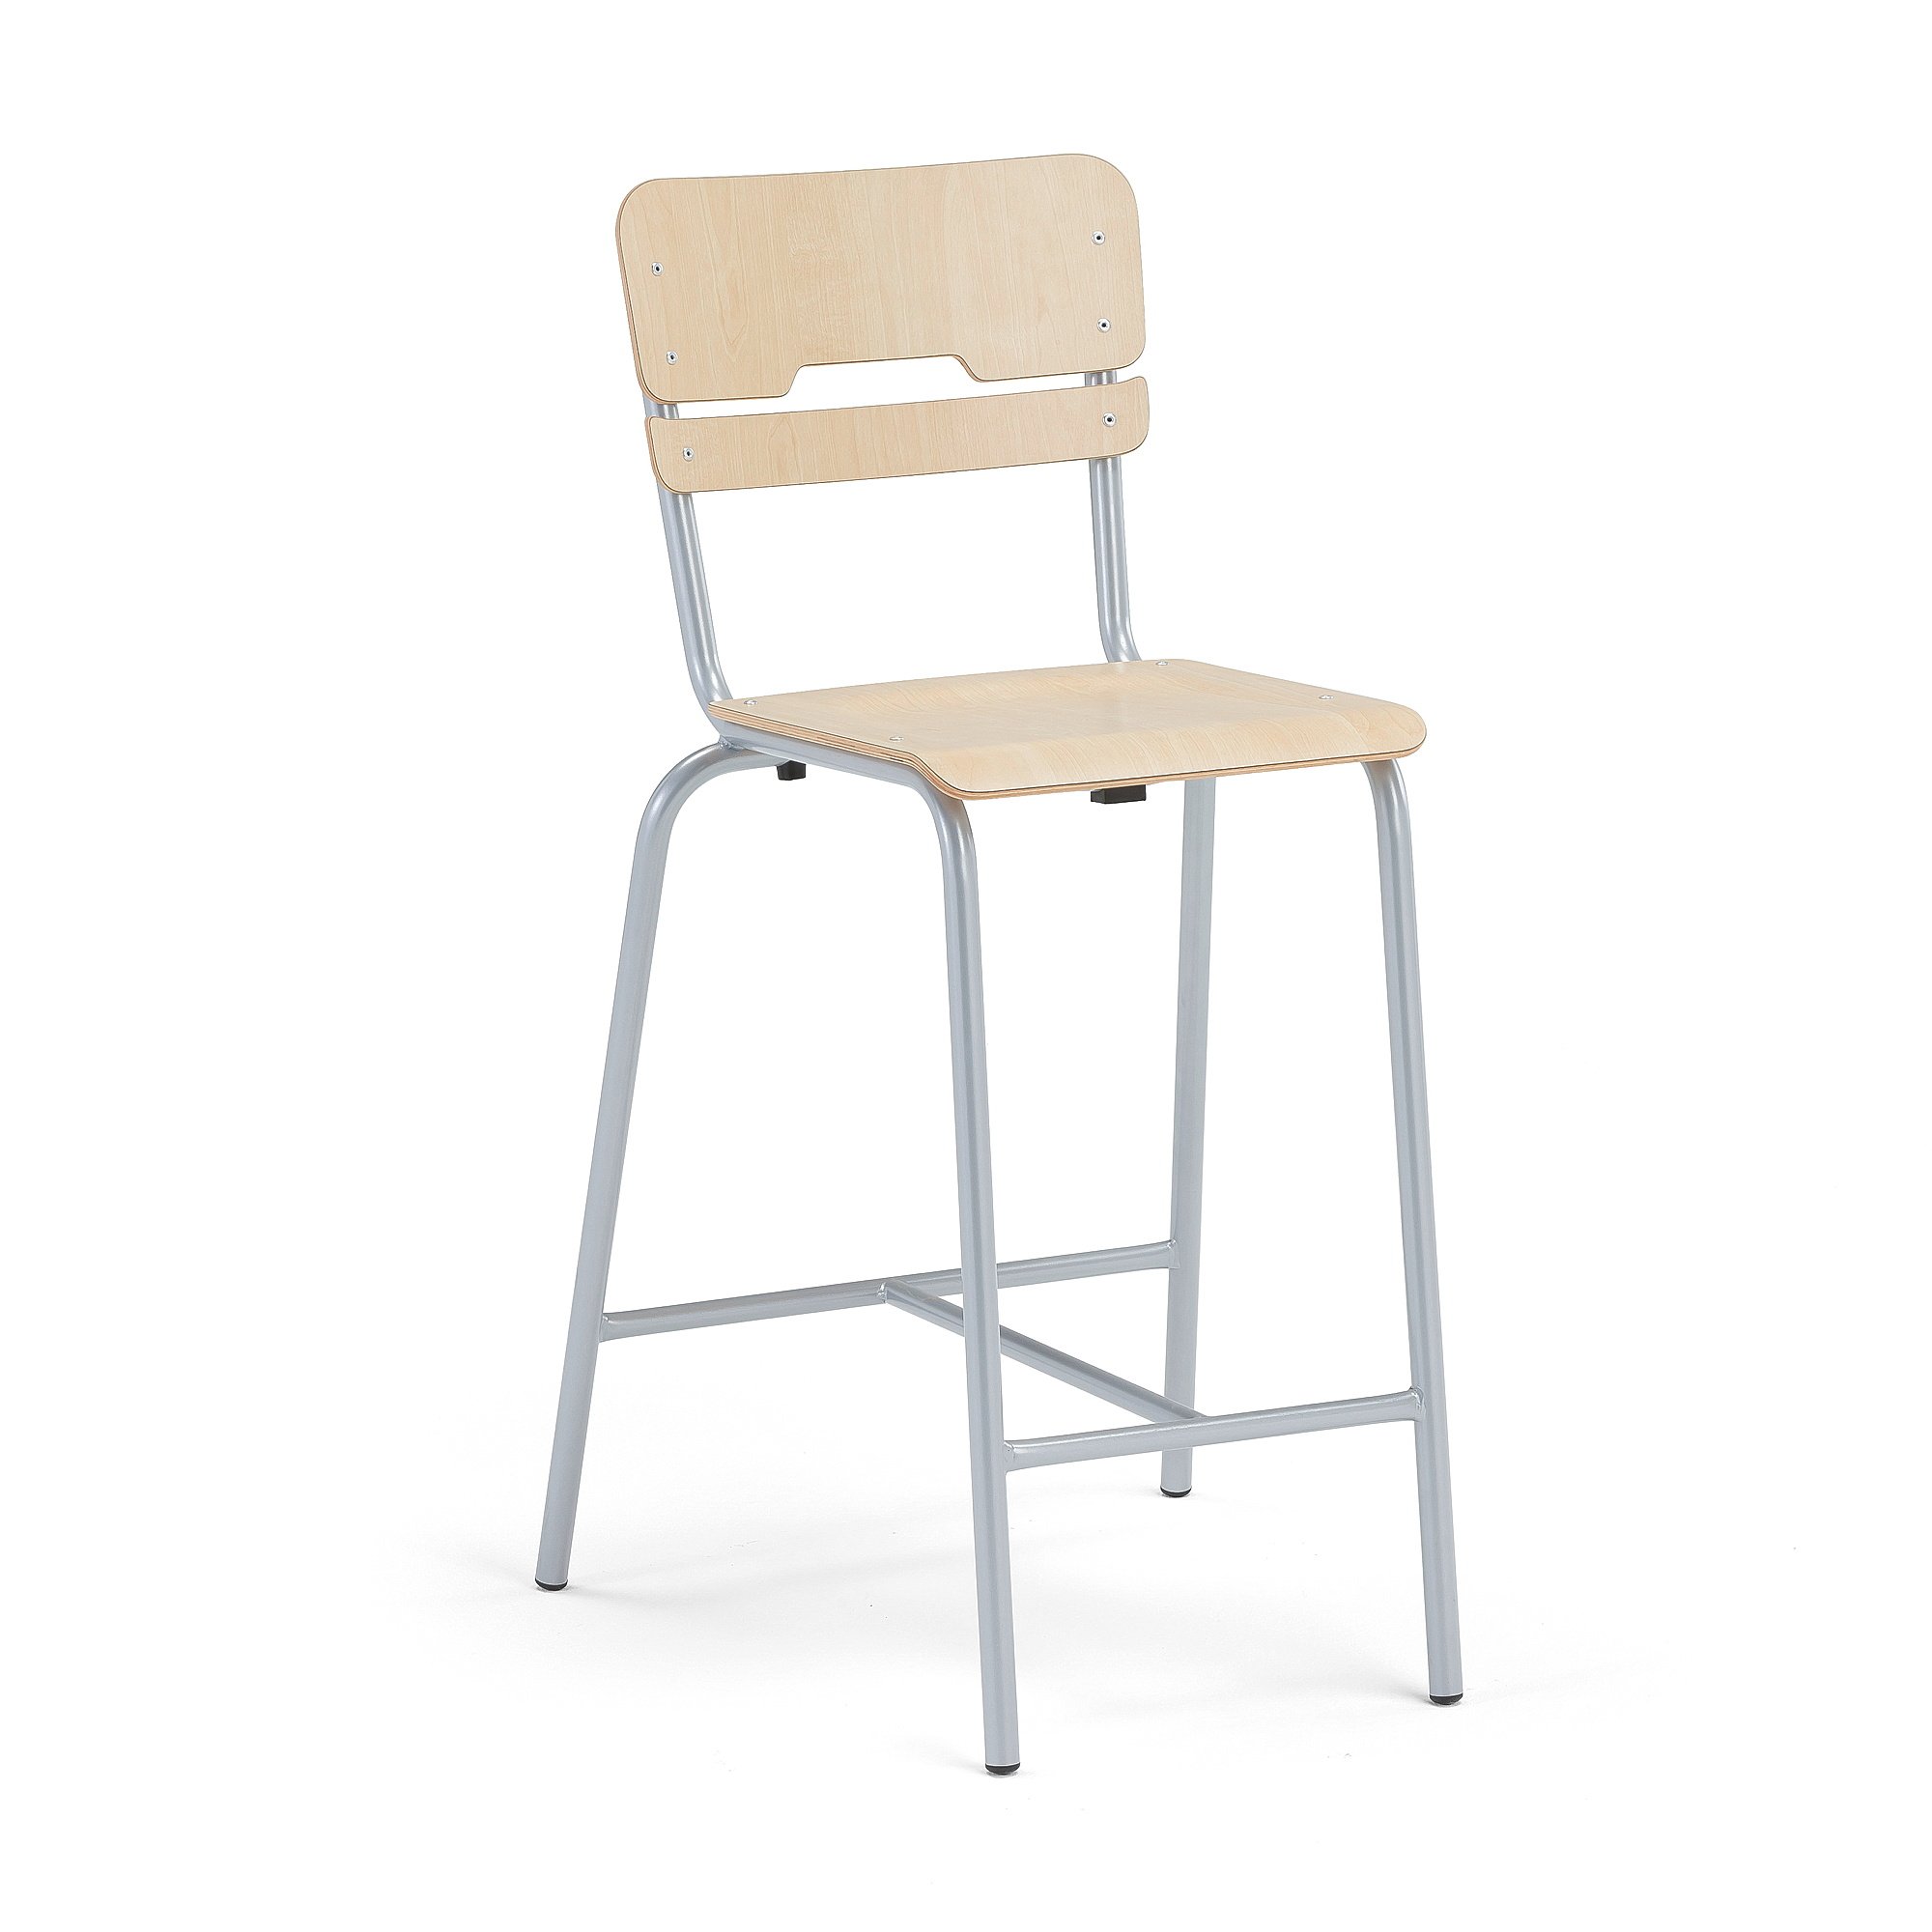 Školní židle SCIENTIA, sedák 360x360 mm, výška 650 mm, stříbrná/bříza